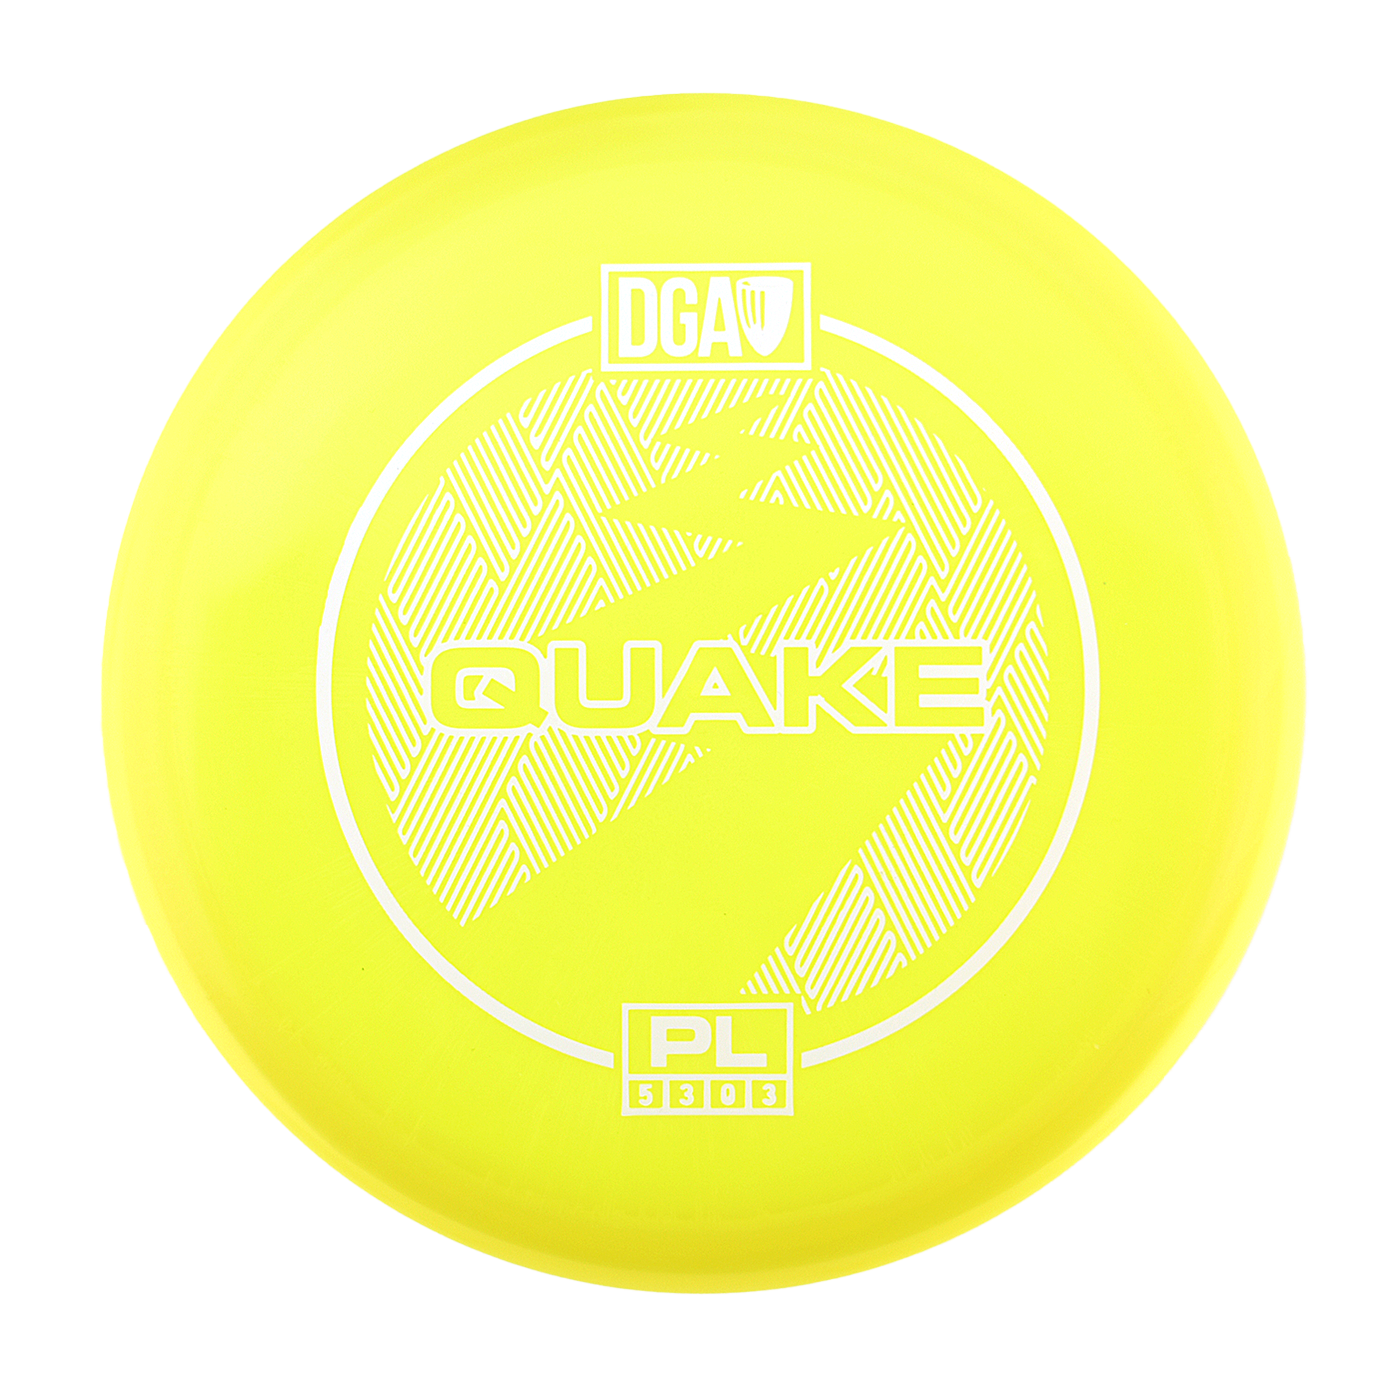 DGA Quake - ProLine